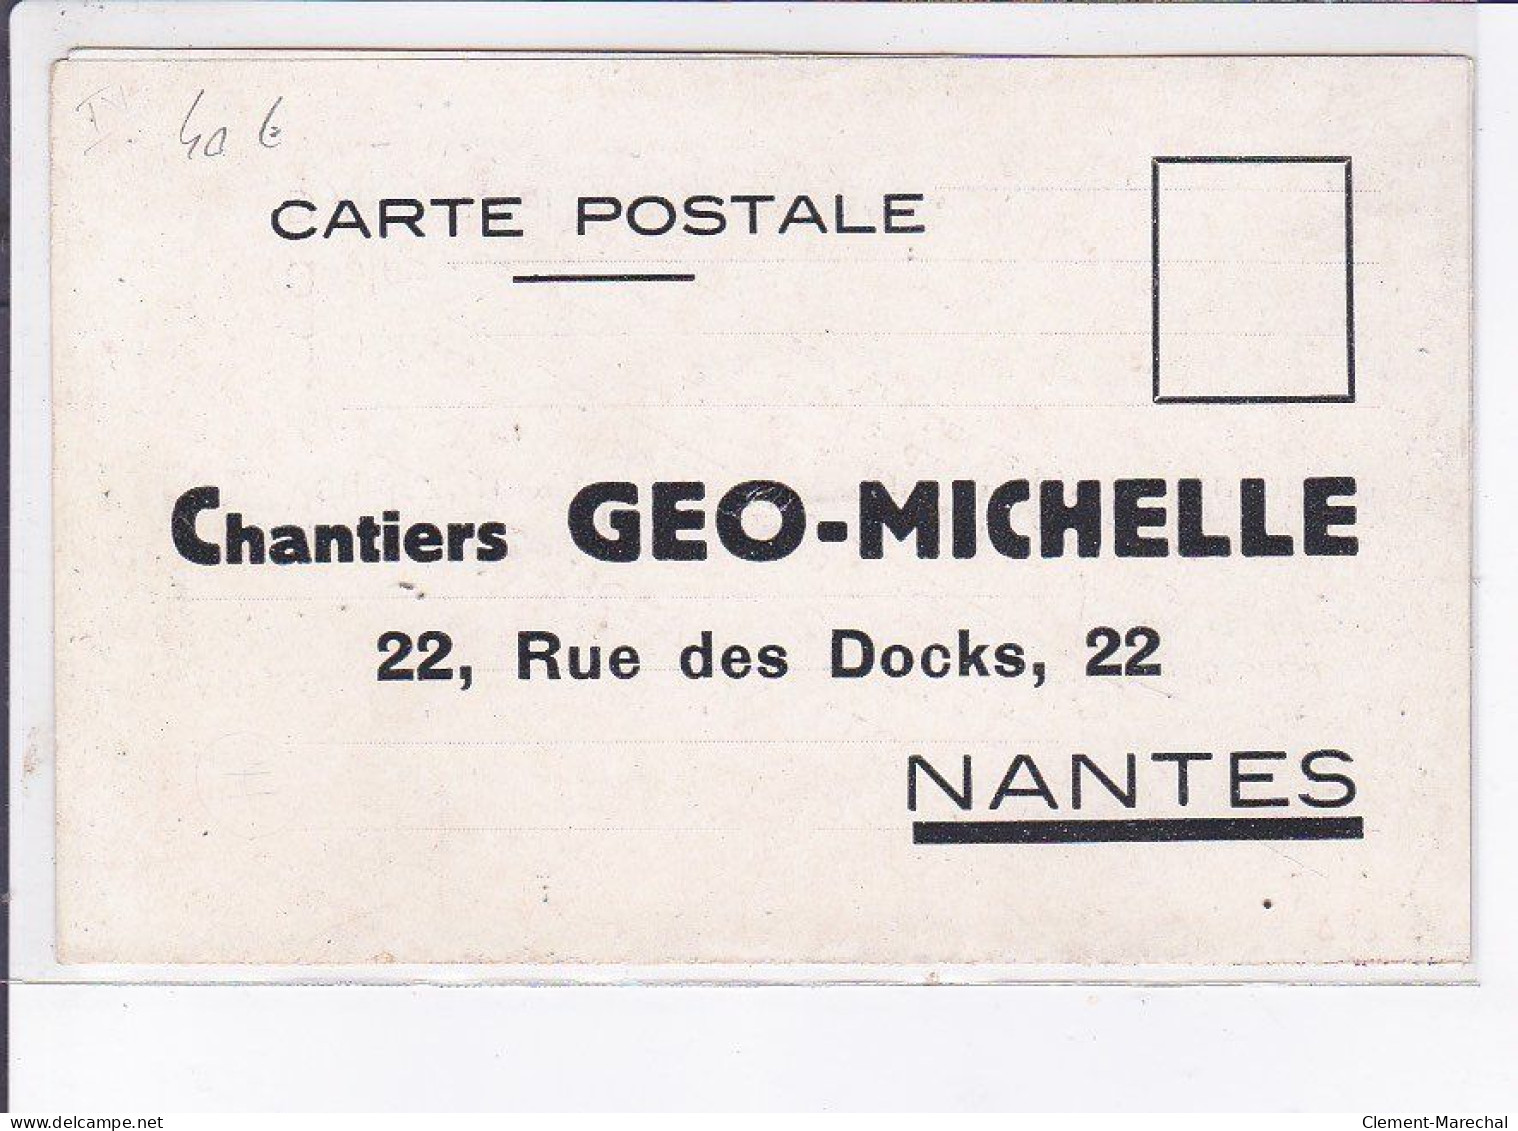 PUBLICITE : L'économie Par La Qualité - Chantiers Géo Michelle à NANTES (illustrée Par Kossuth) - Très Bon état - Werbepostkarten